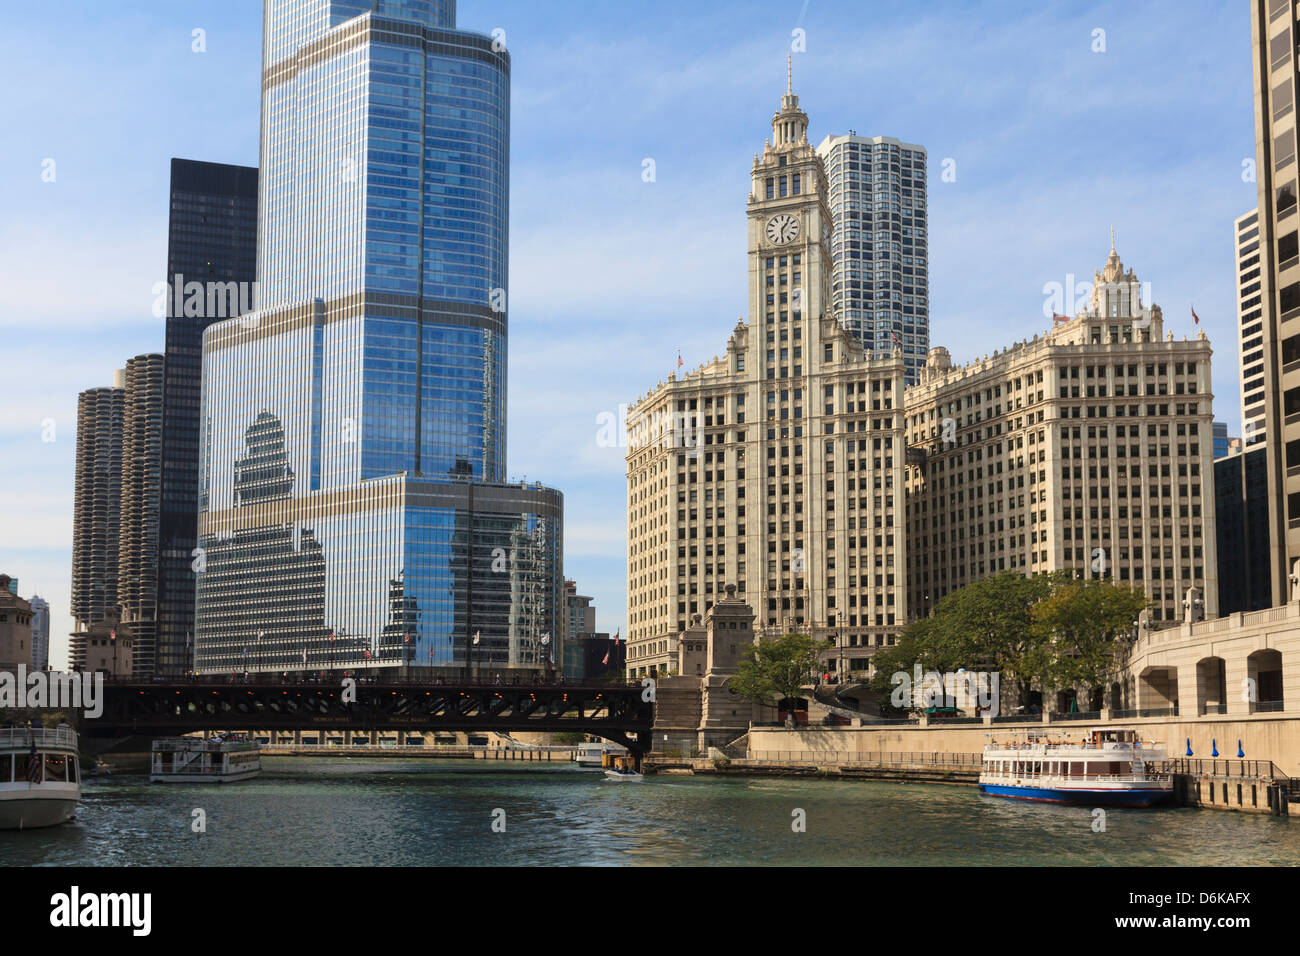 Trump Tower und das Wrigley Building von der Chicago River, Chicago, Illinois, Vereinigte Staaten von Amerika, Nordamerika Stockfoto